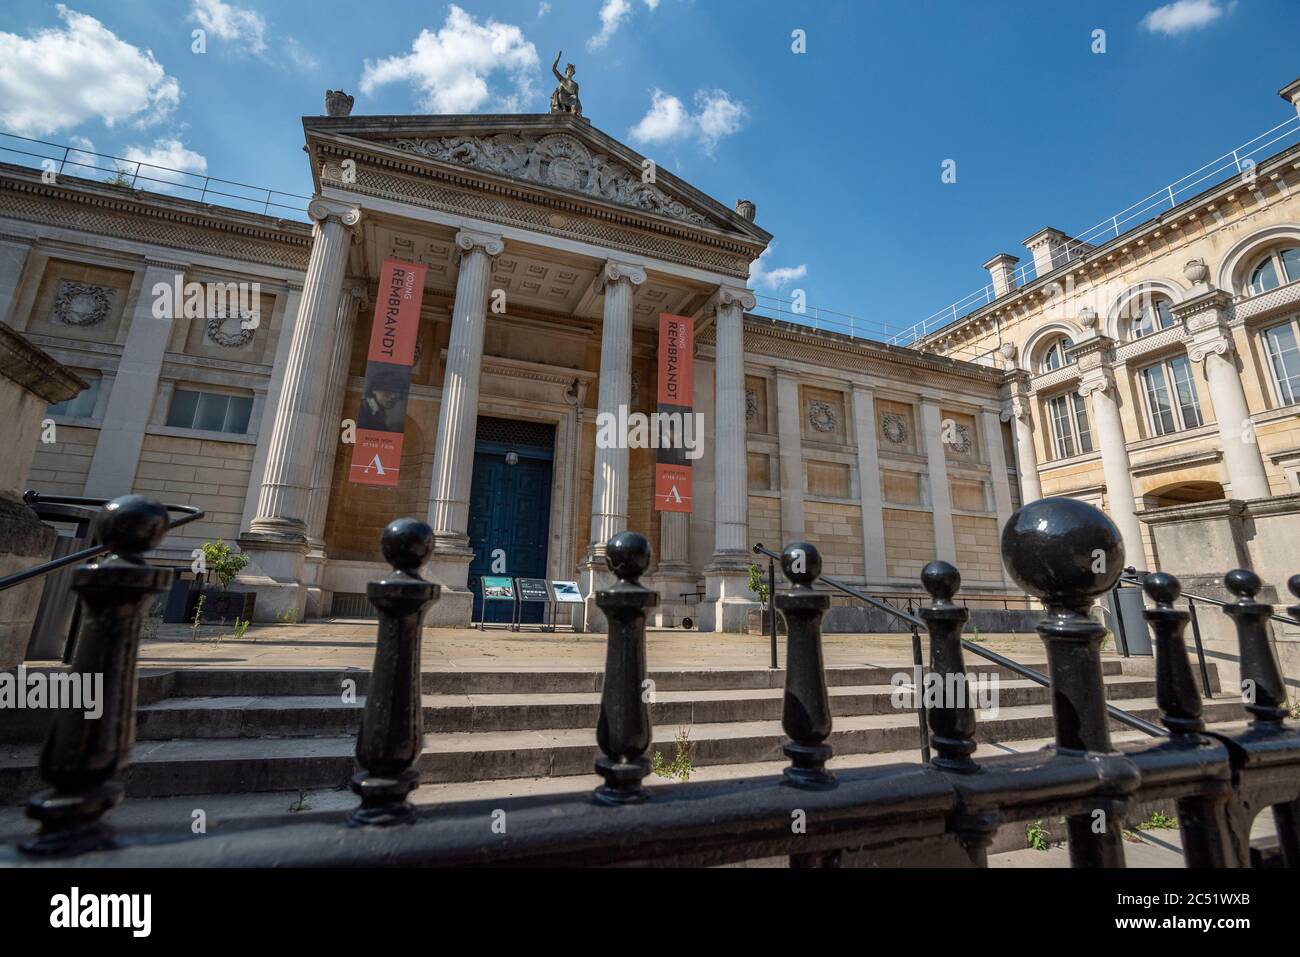 Il museo Ashmolean di Oxford rimarrà chiuso fino ad agosto, anziché riaprirsi il 4 luglio. Il museo ha molte modifiche da apportare per soddisfare le nuove linee guida di Covid. E' chiuso dal 17 marzo 2020. Foto Stock